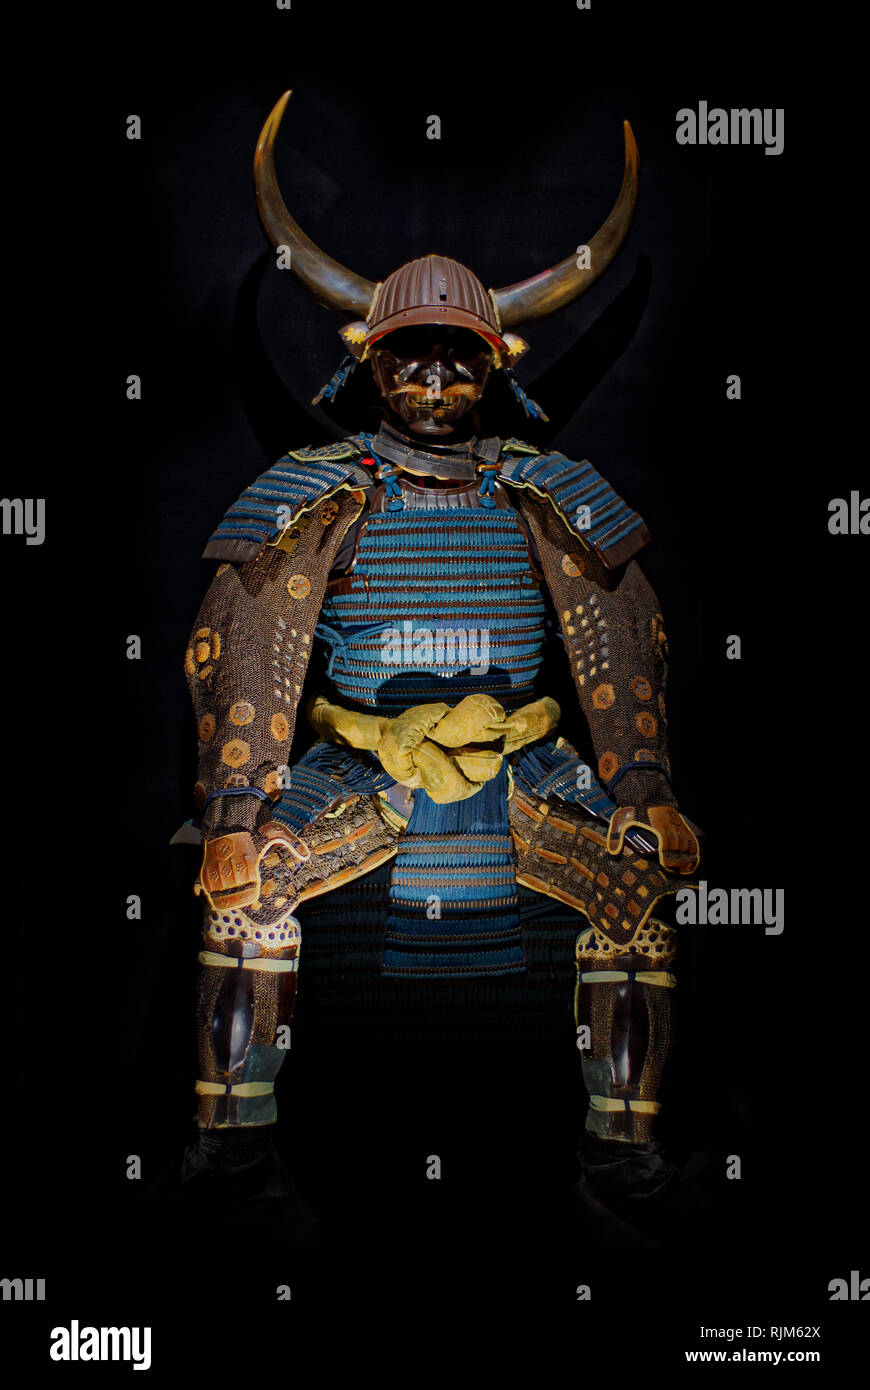 Armure de samouraï japonais ancien, sur fond noir Banque D'Images